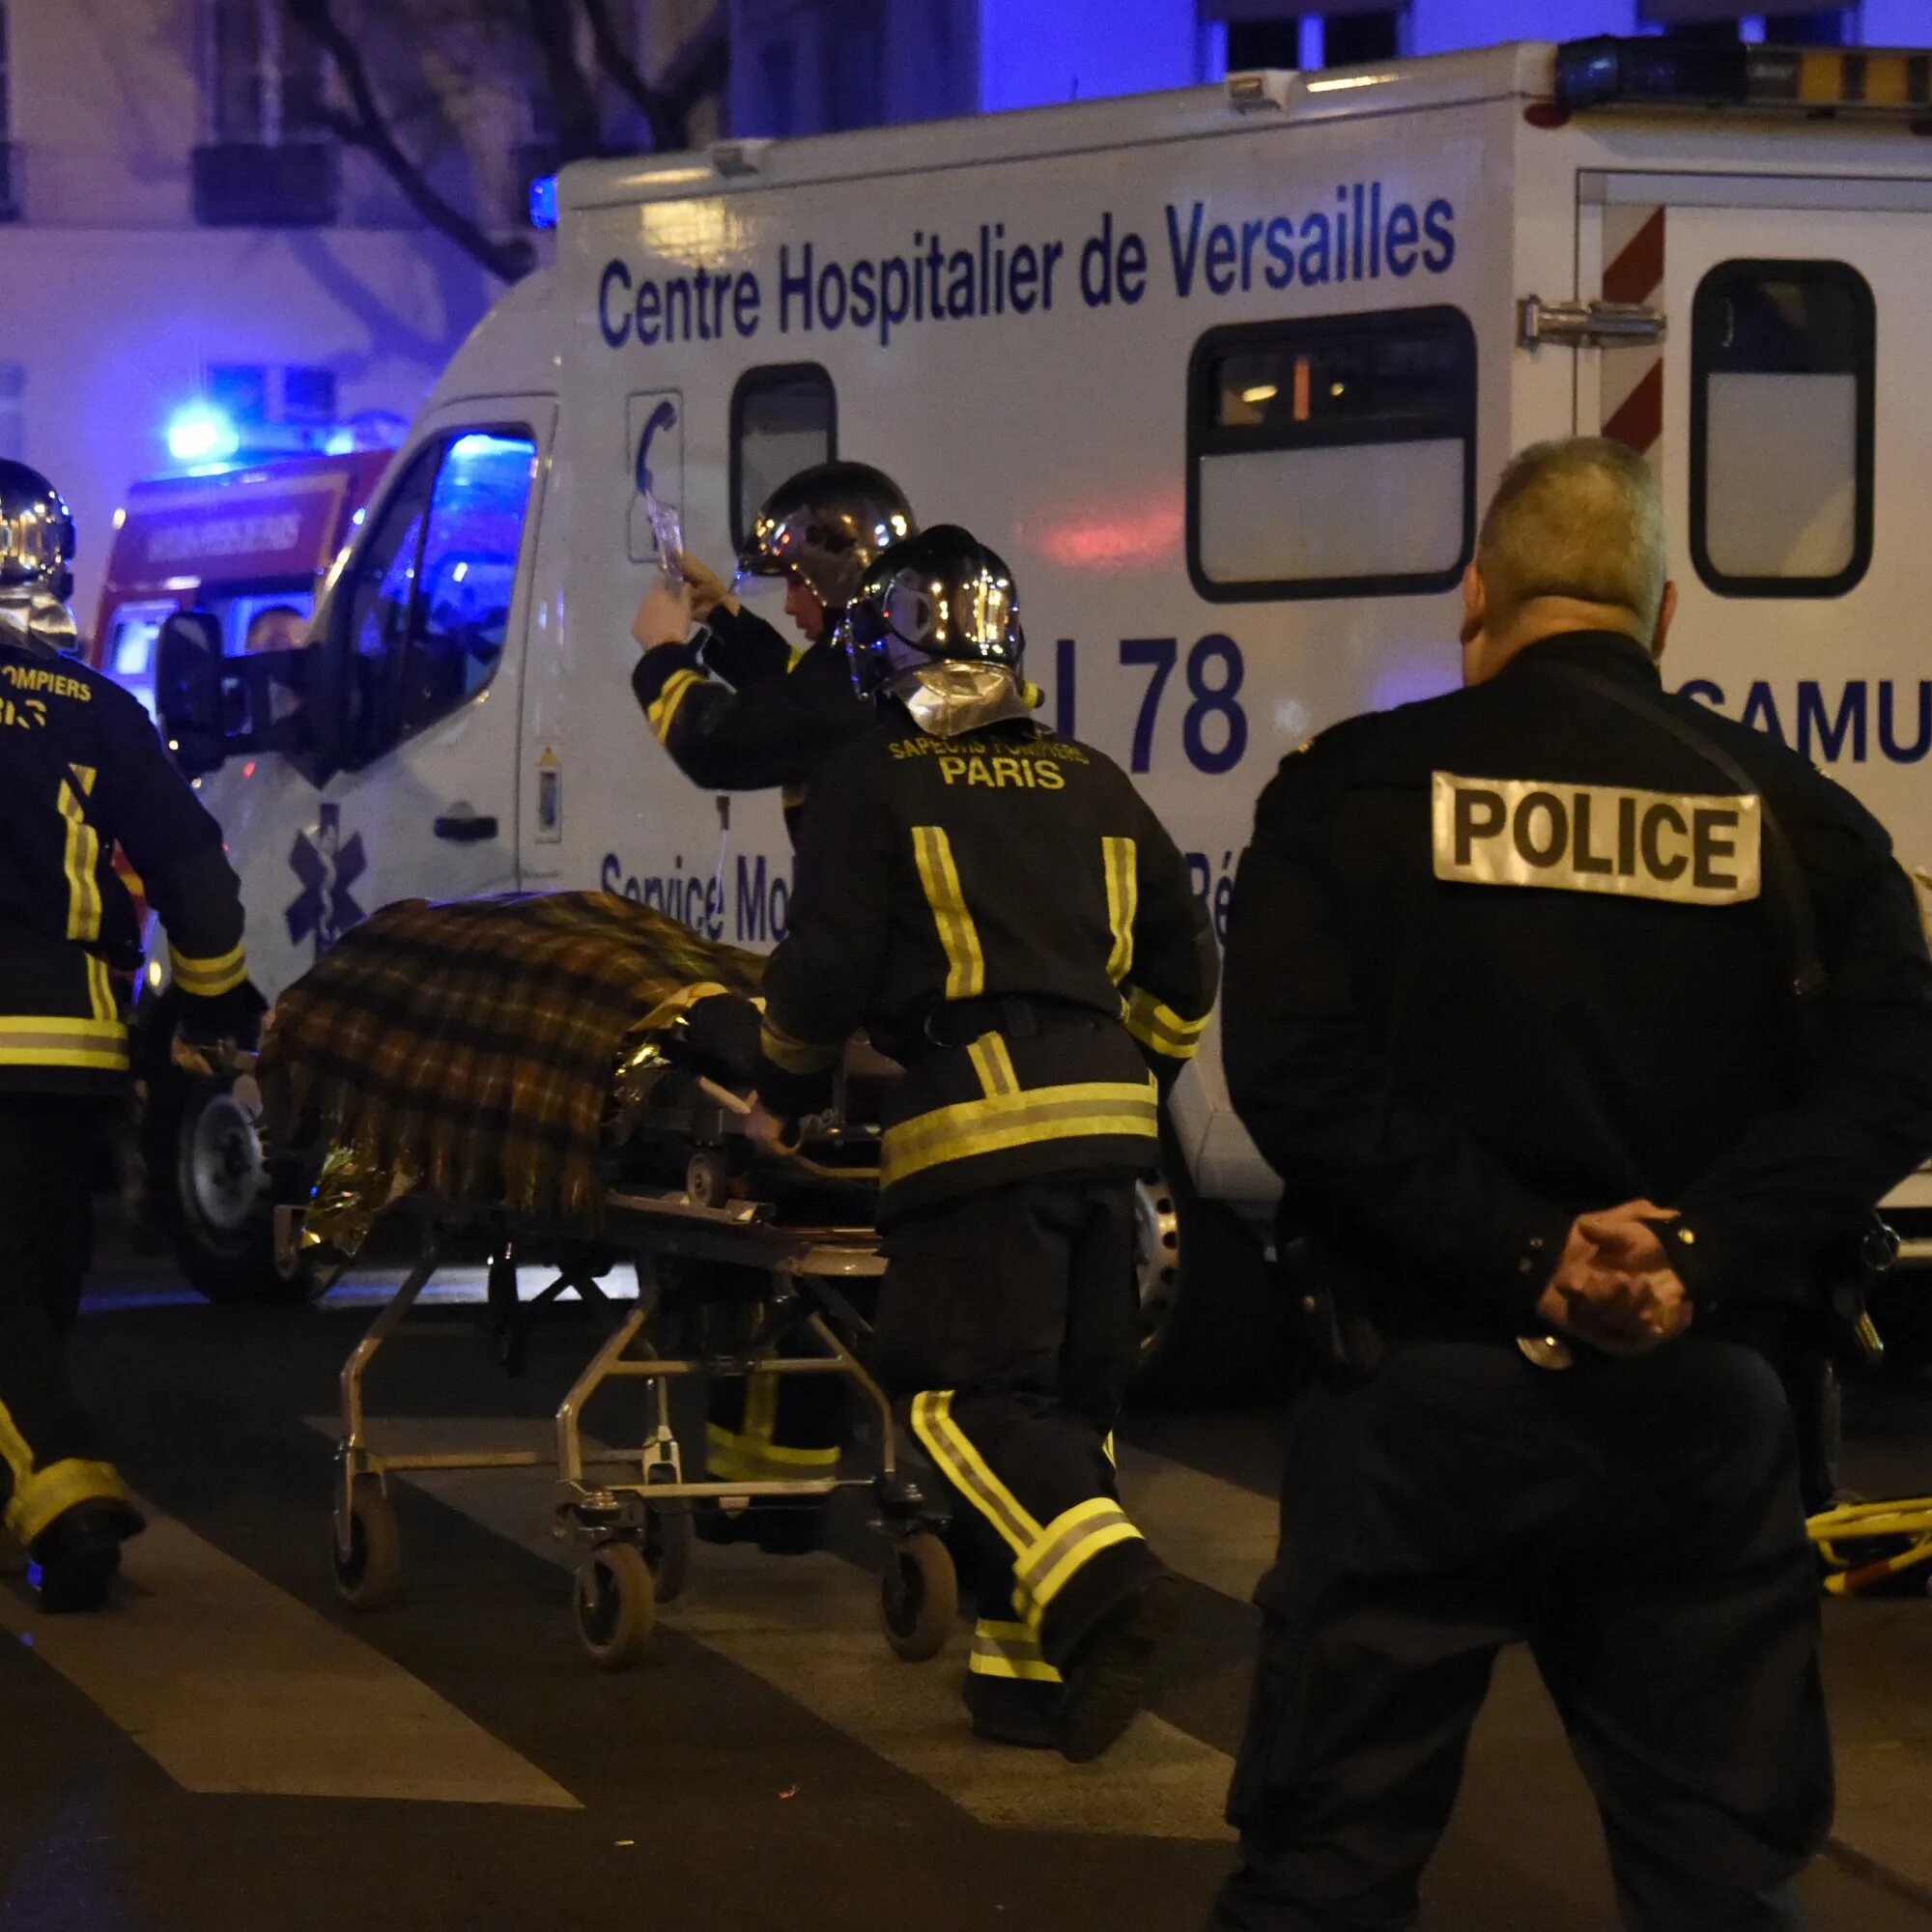 Теракты в Париже 13 ноября 2015 года. 13 Ноября 2015 Франция теракт Bataclan. Жертвы теракта в Париже автомобиль. Evacuate injured person. Опознание террористов крокус